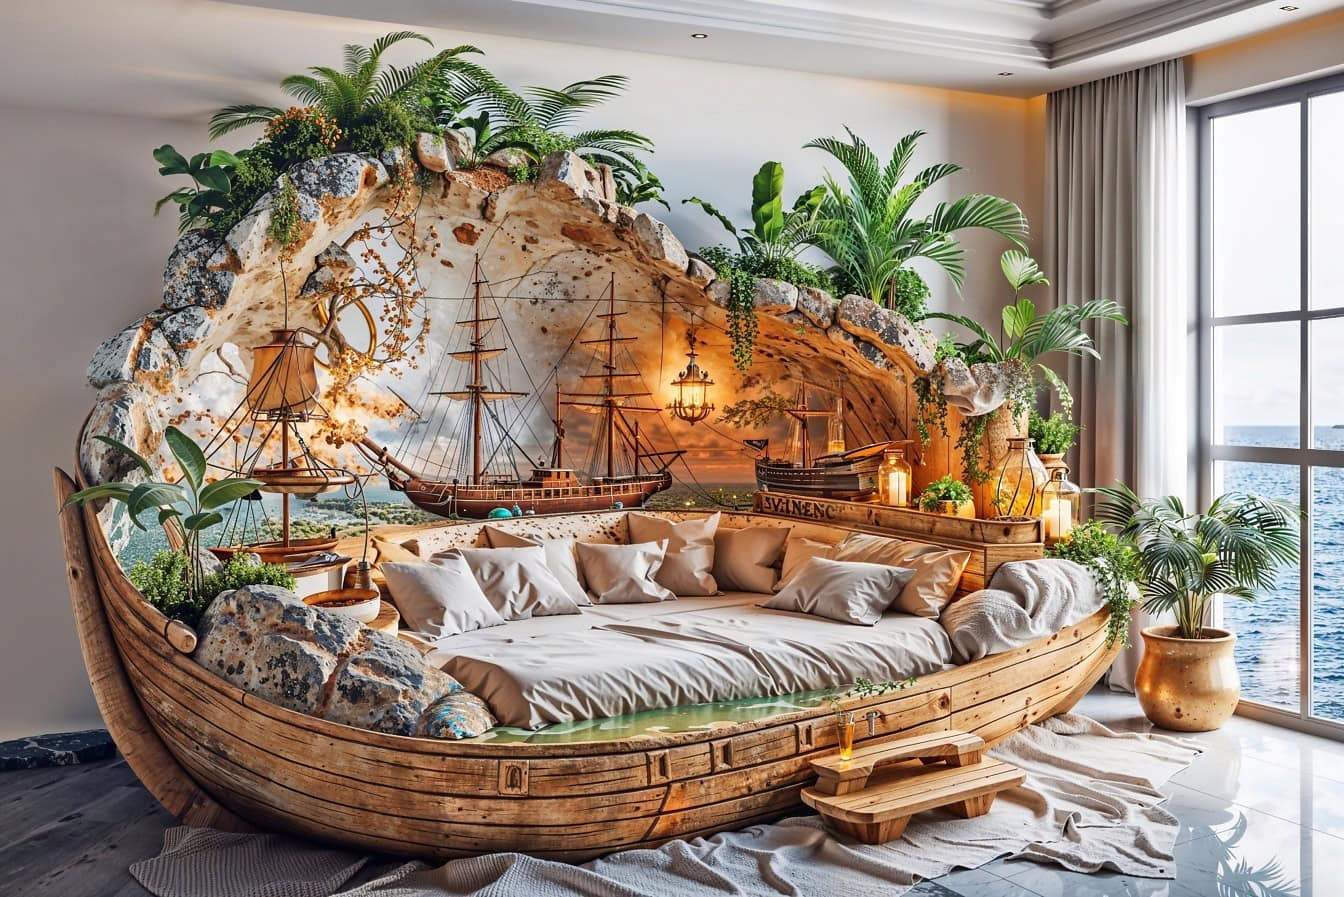 Bohem bir kaptanın yatak odasında deniz tarzında rustik yatak